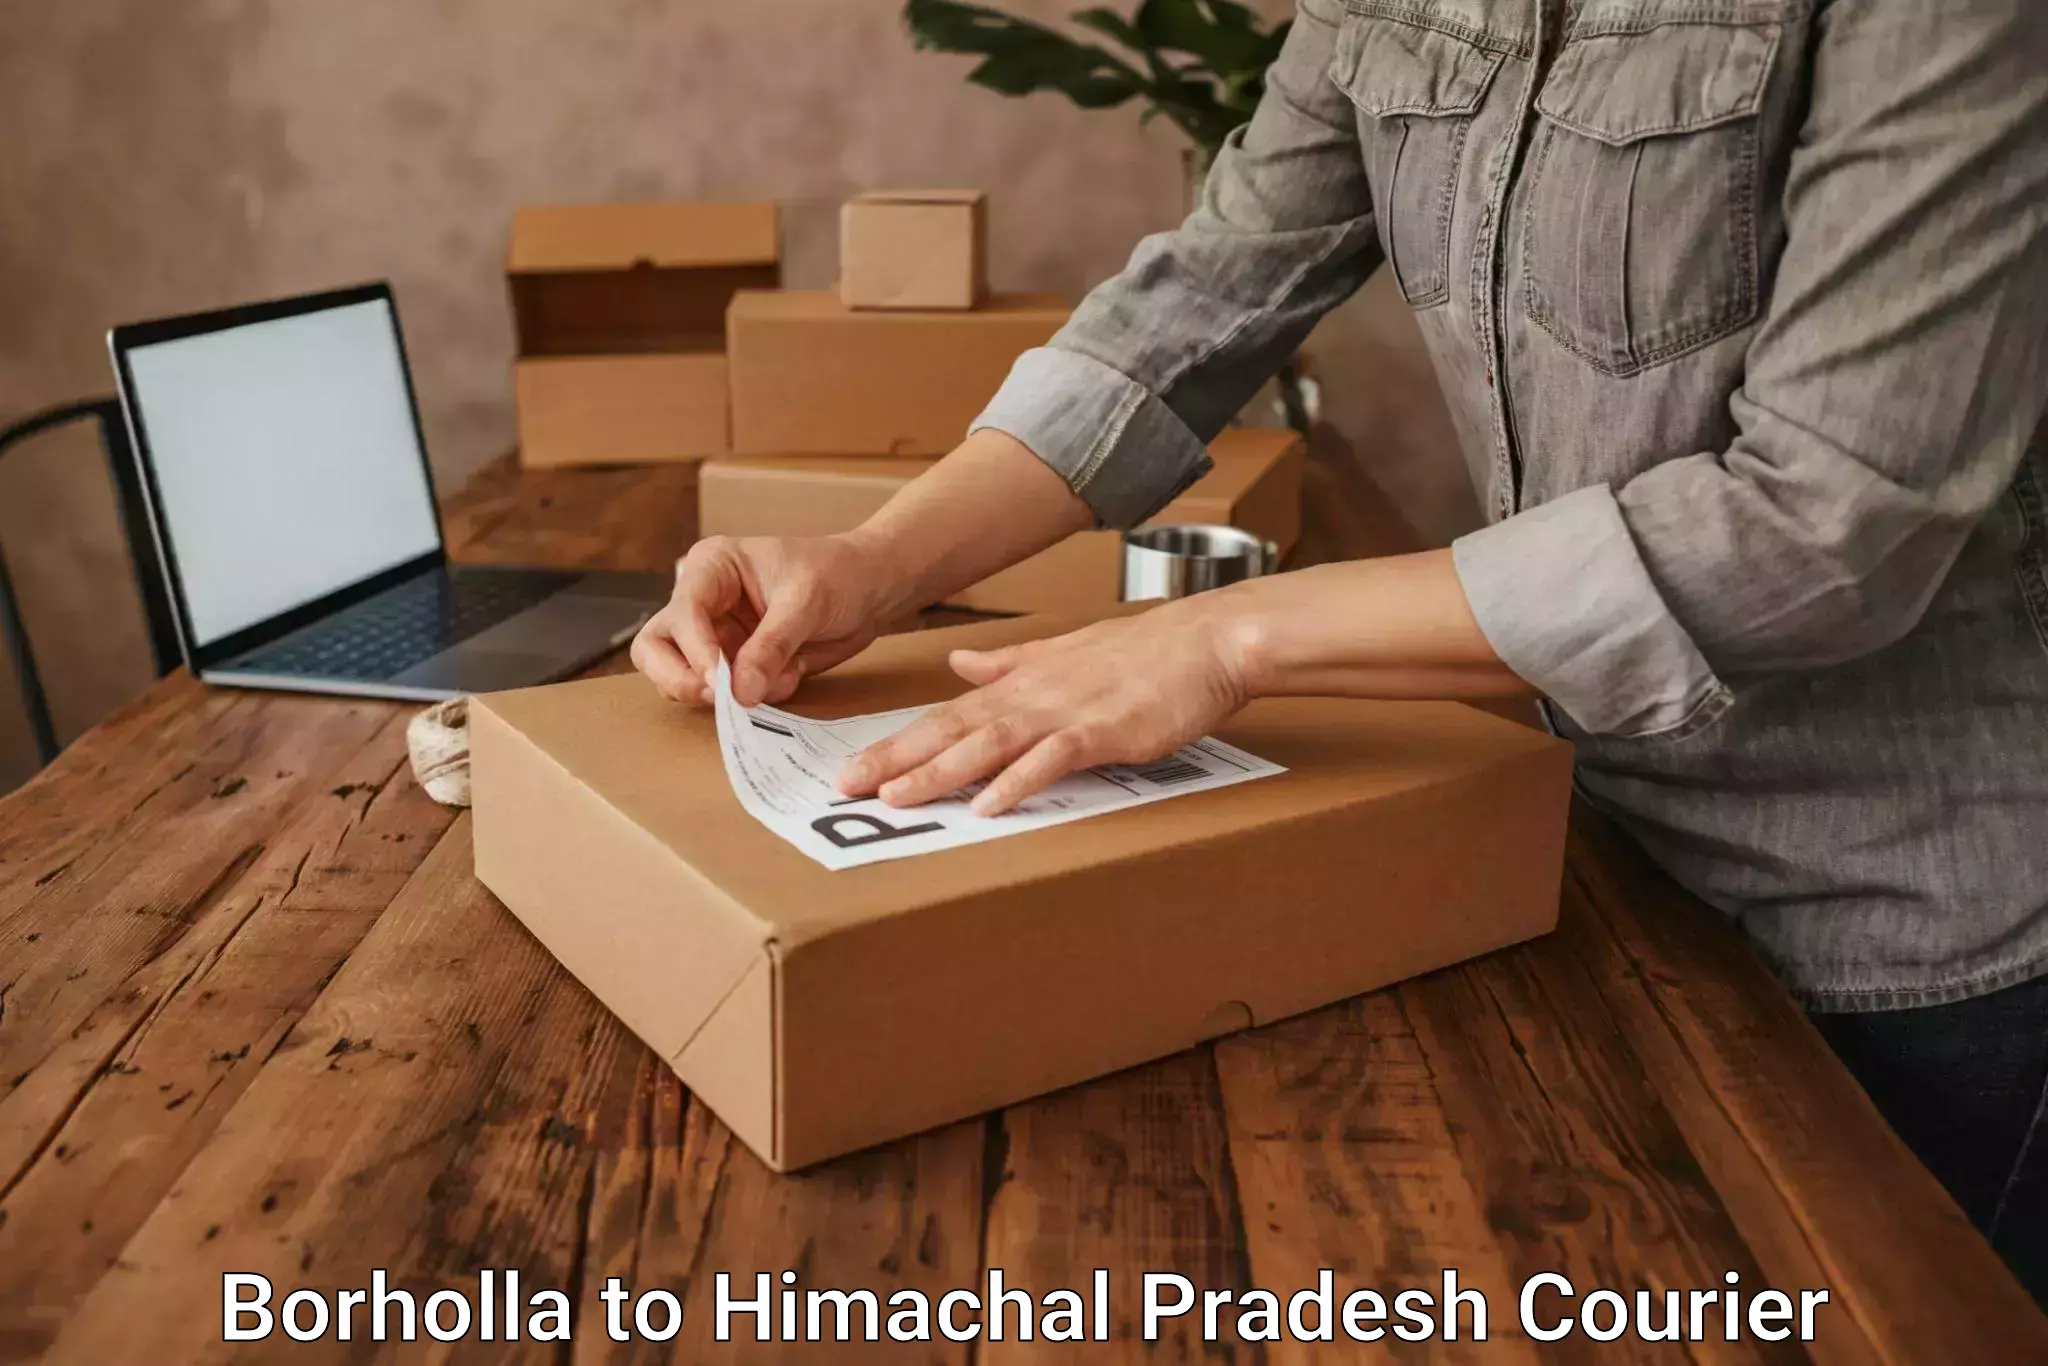 Nationwide parcel services Borholla to Una Himachal Pradesh